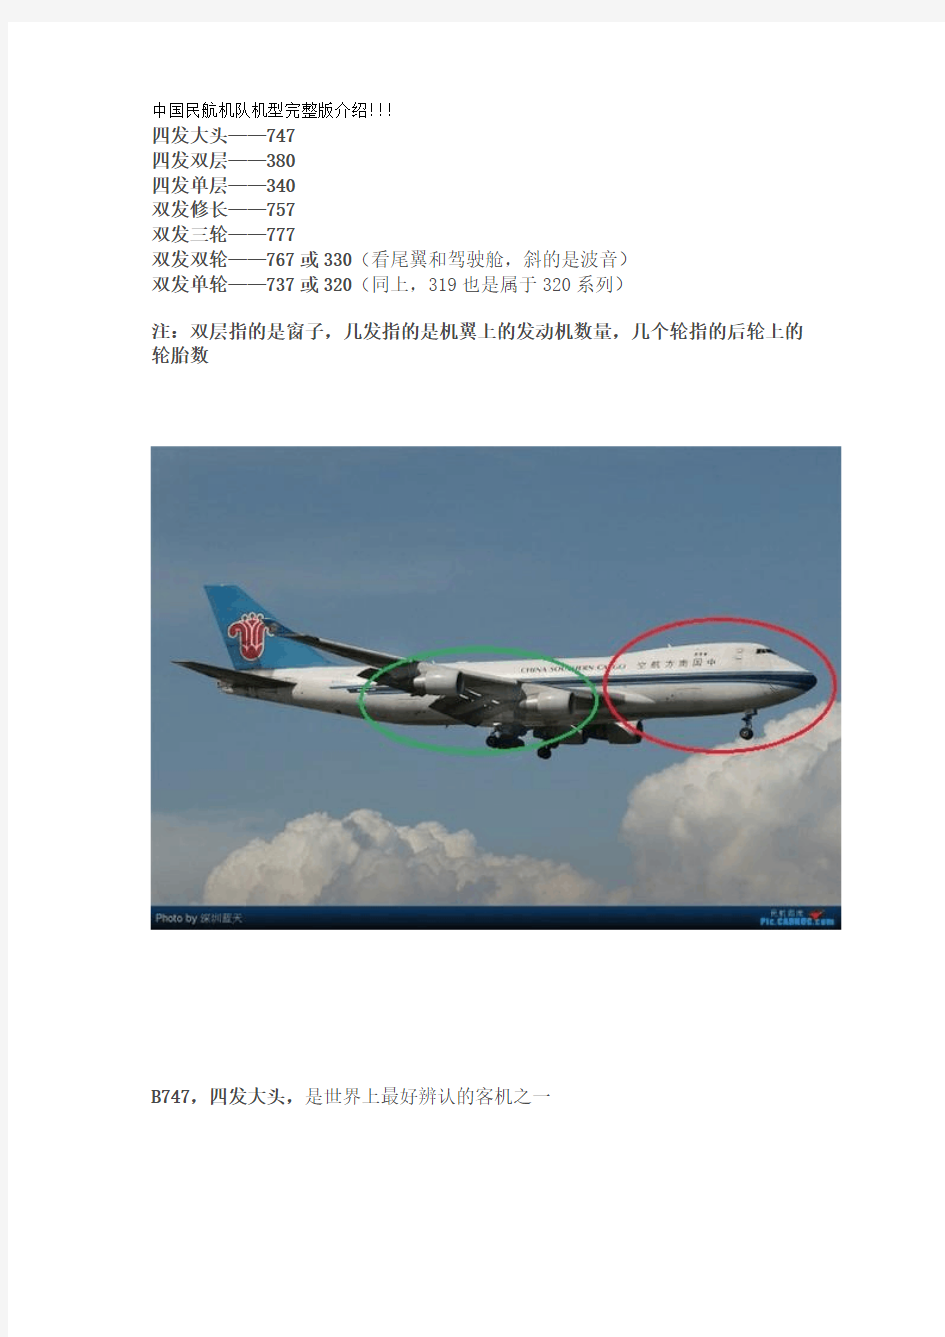 中国民航机队机型完整版介绍